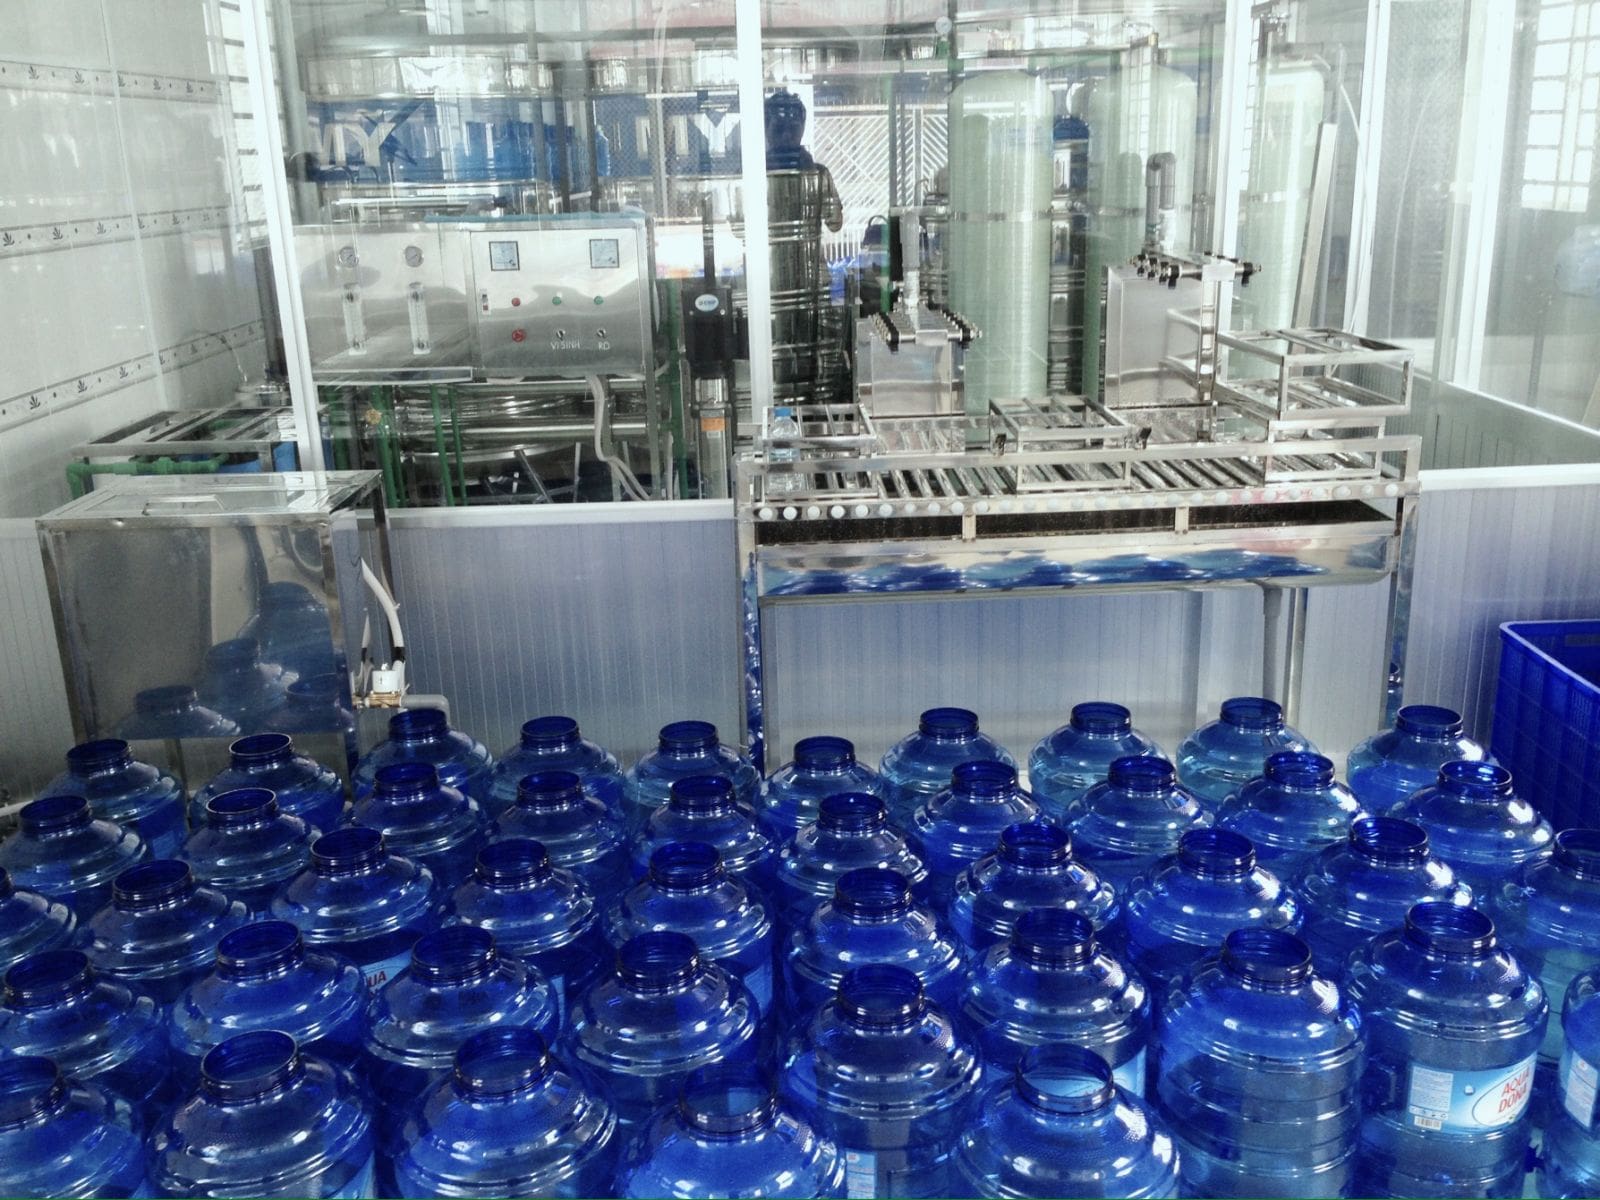 xưởng sản xuất chai nhựa tại hà nội